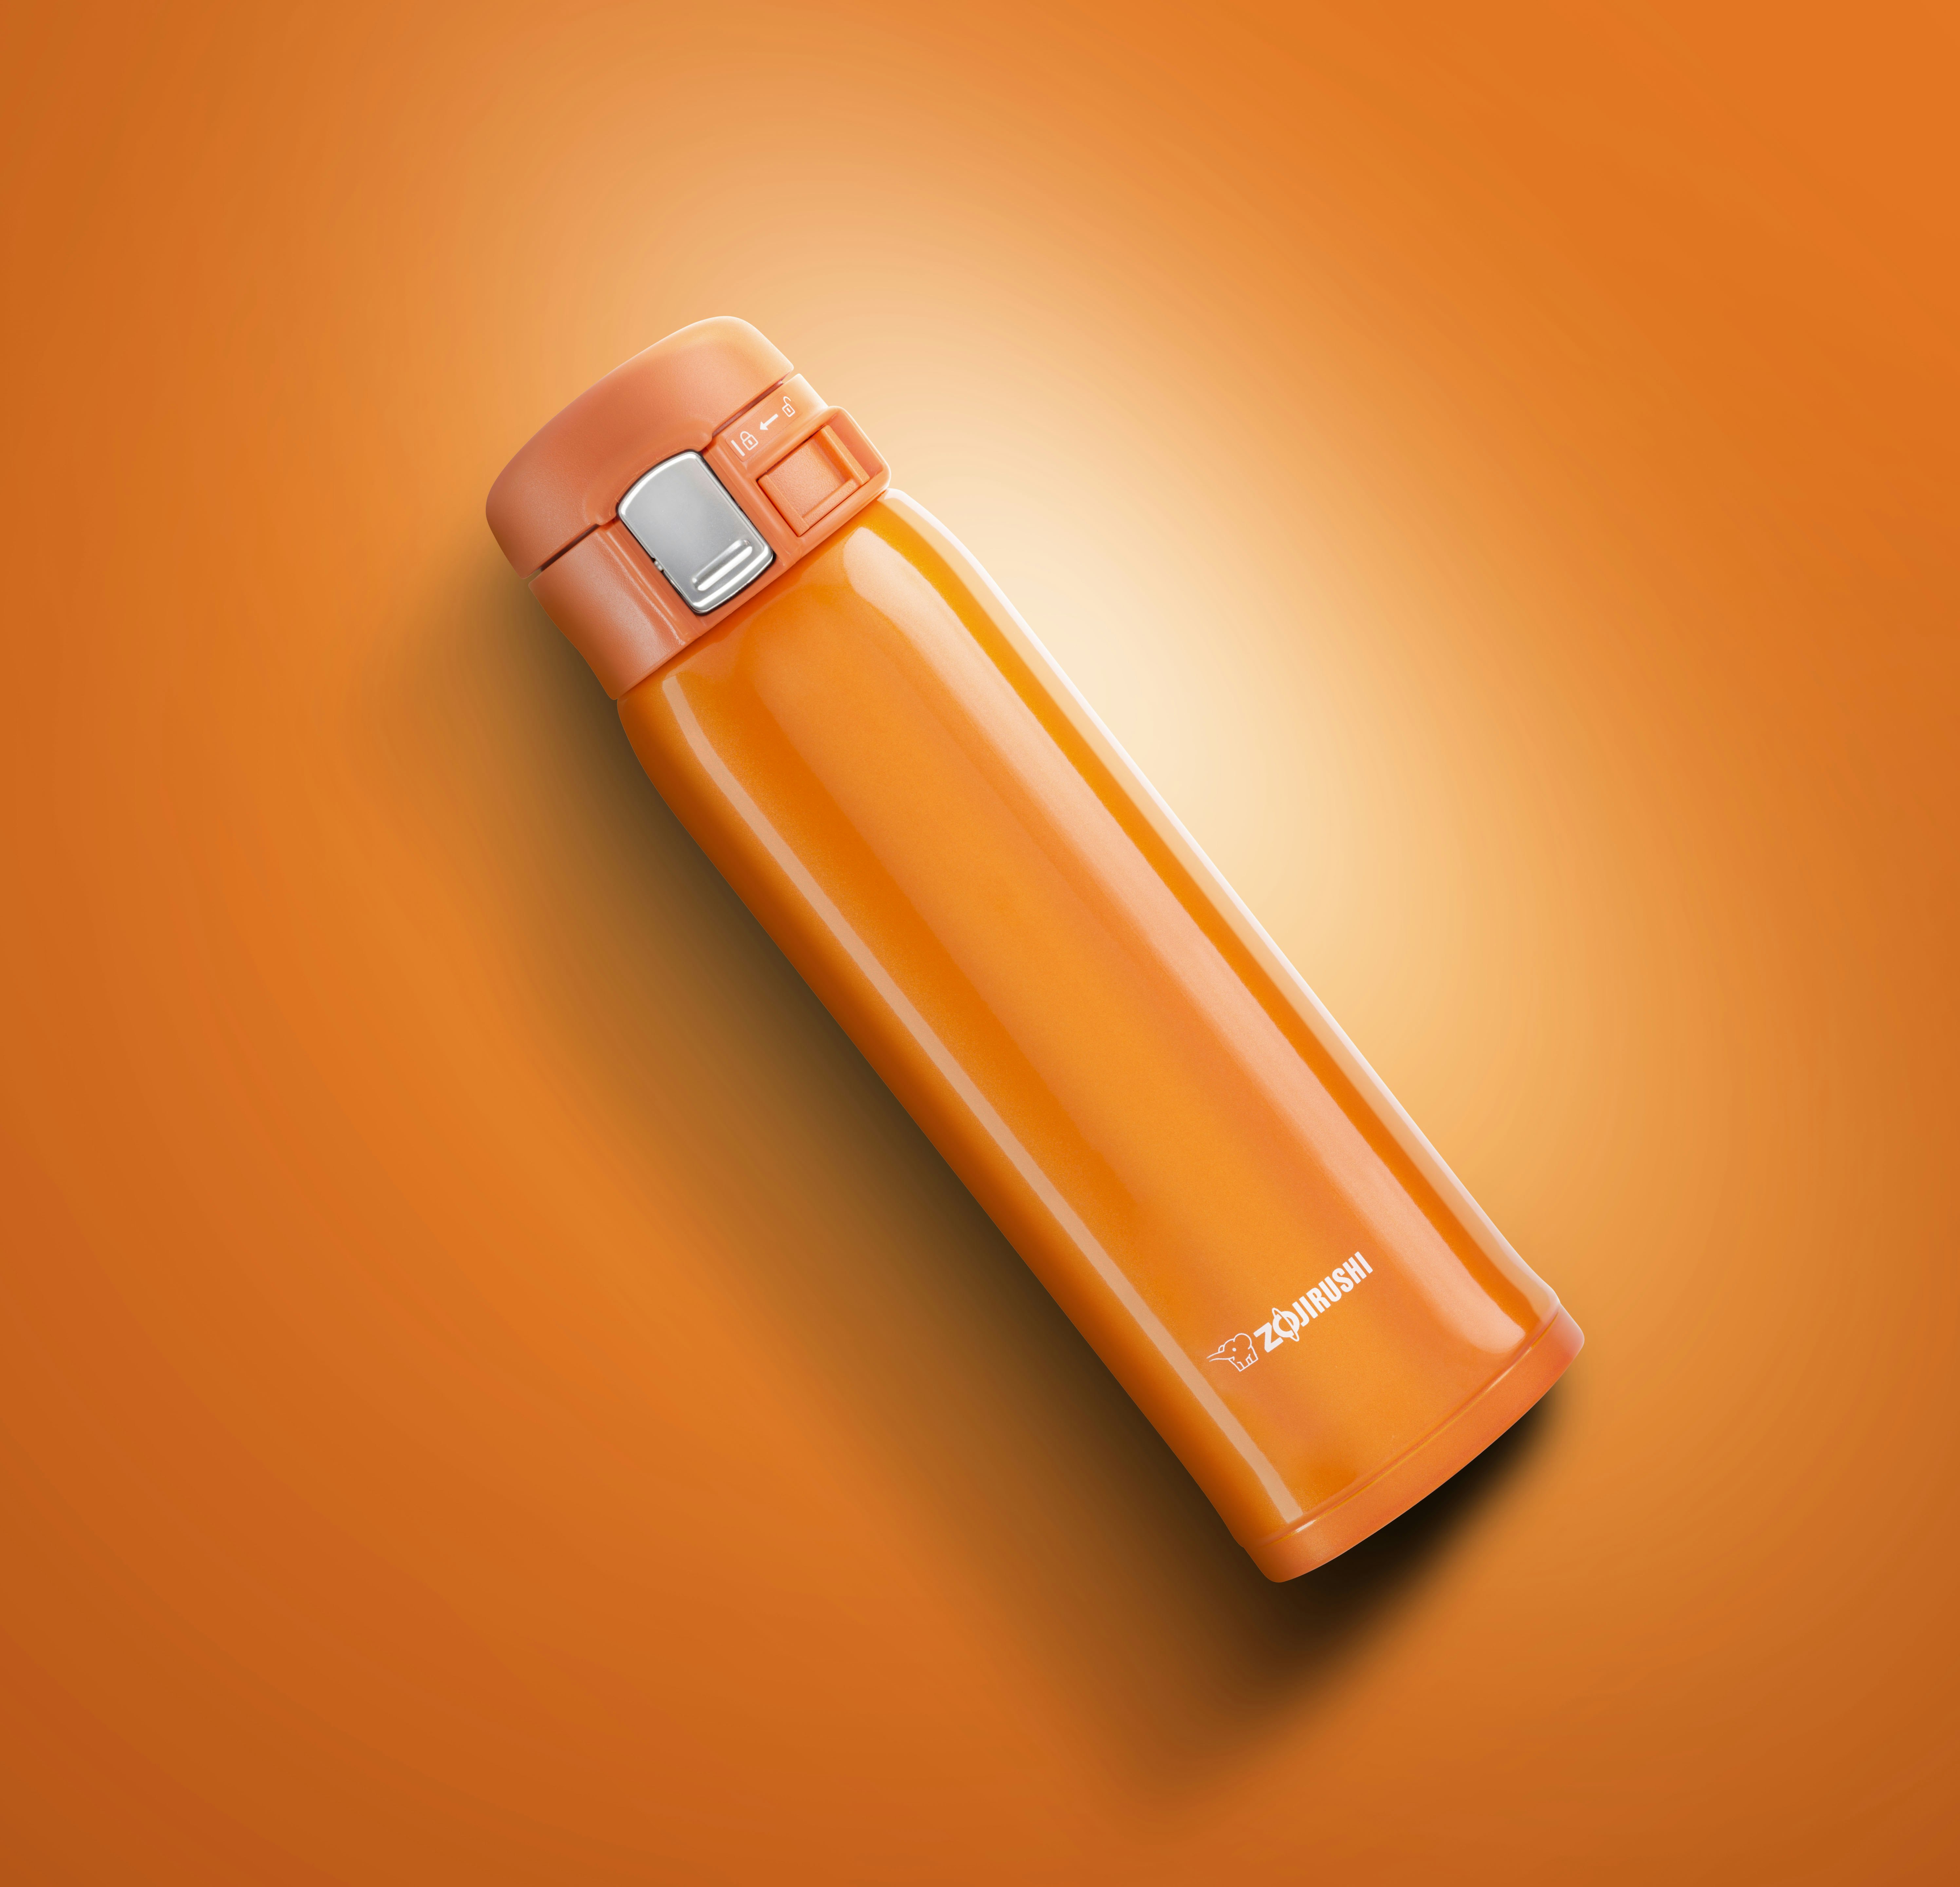 Orange Zojirushi thermos on an orange background